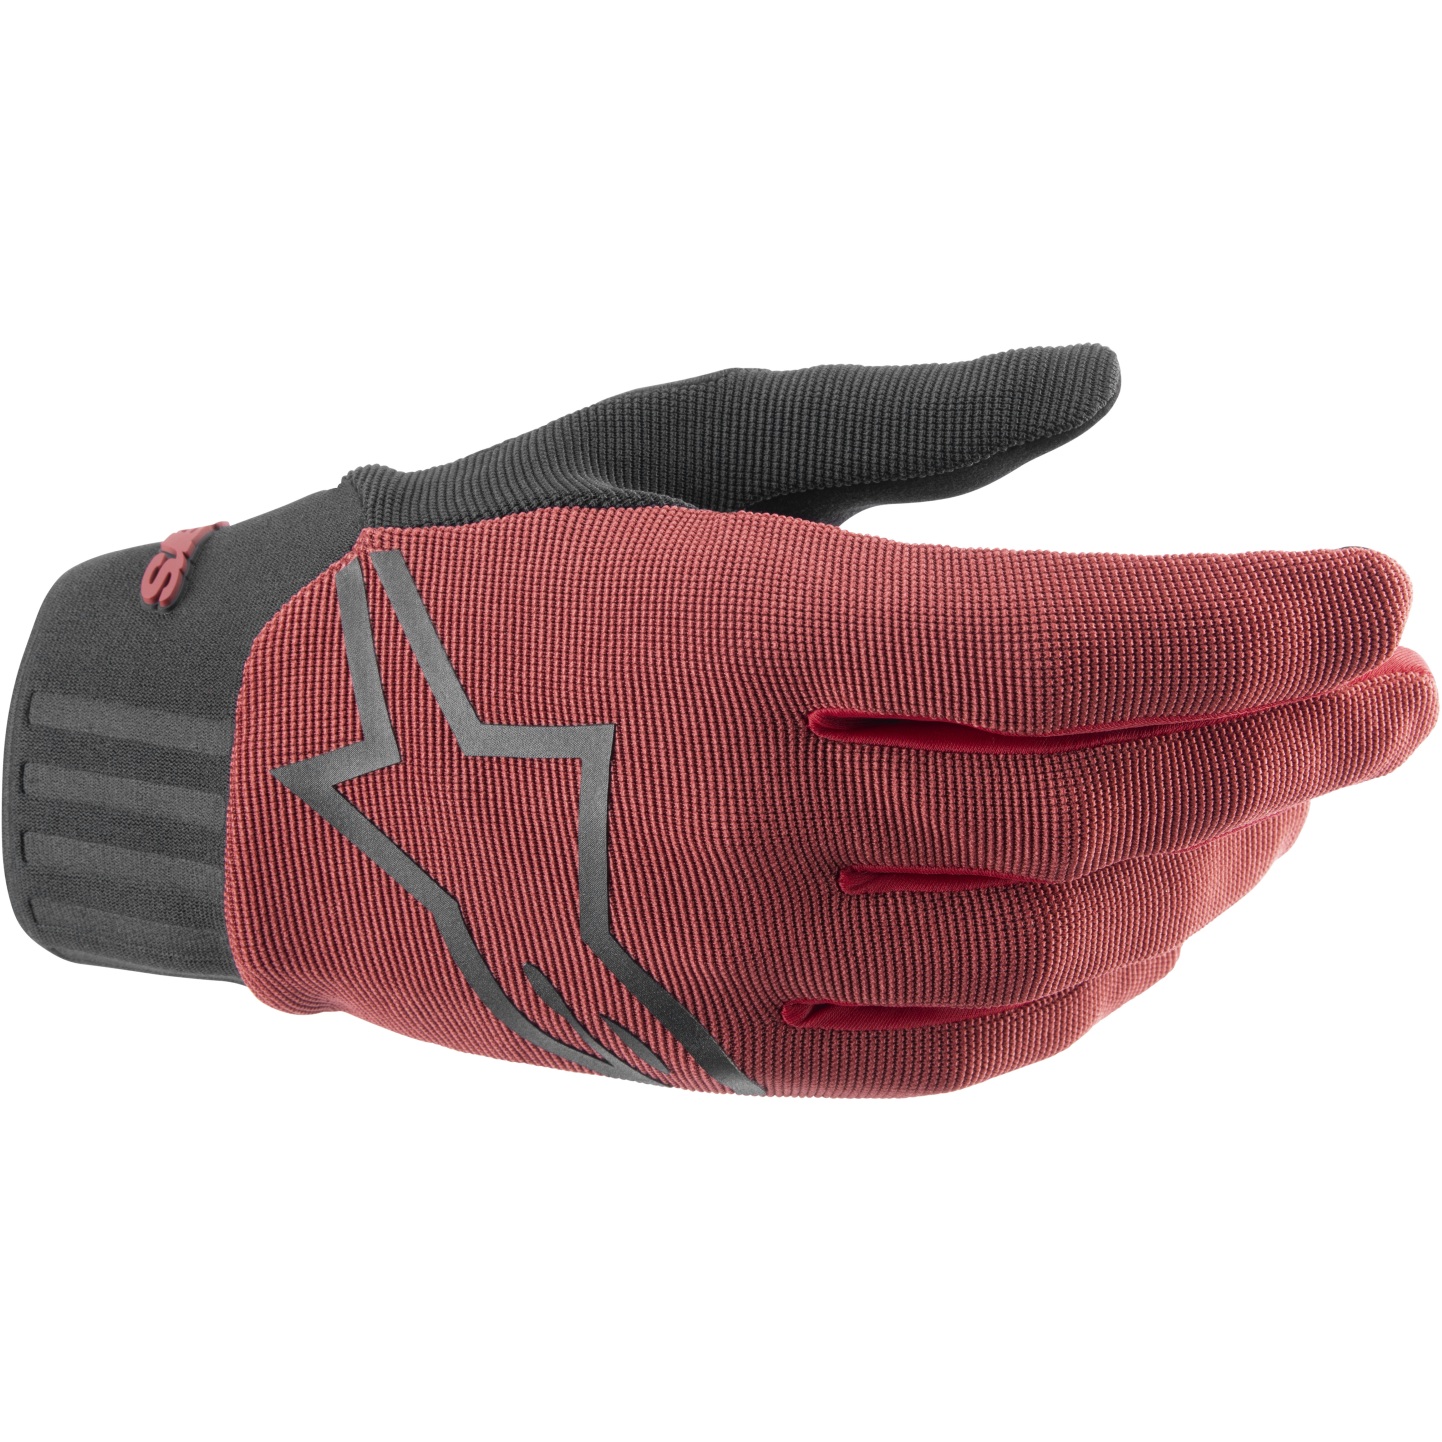 Produktbild von Alpinestars Stella A-Dura Handschuhe Damen - burgundy